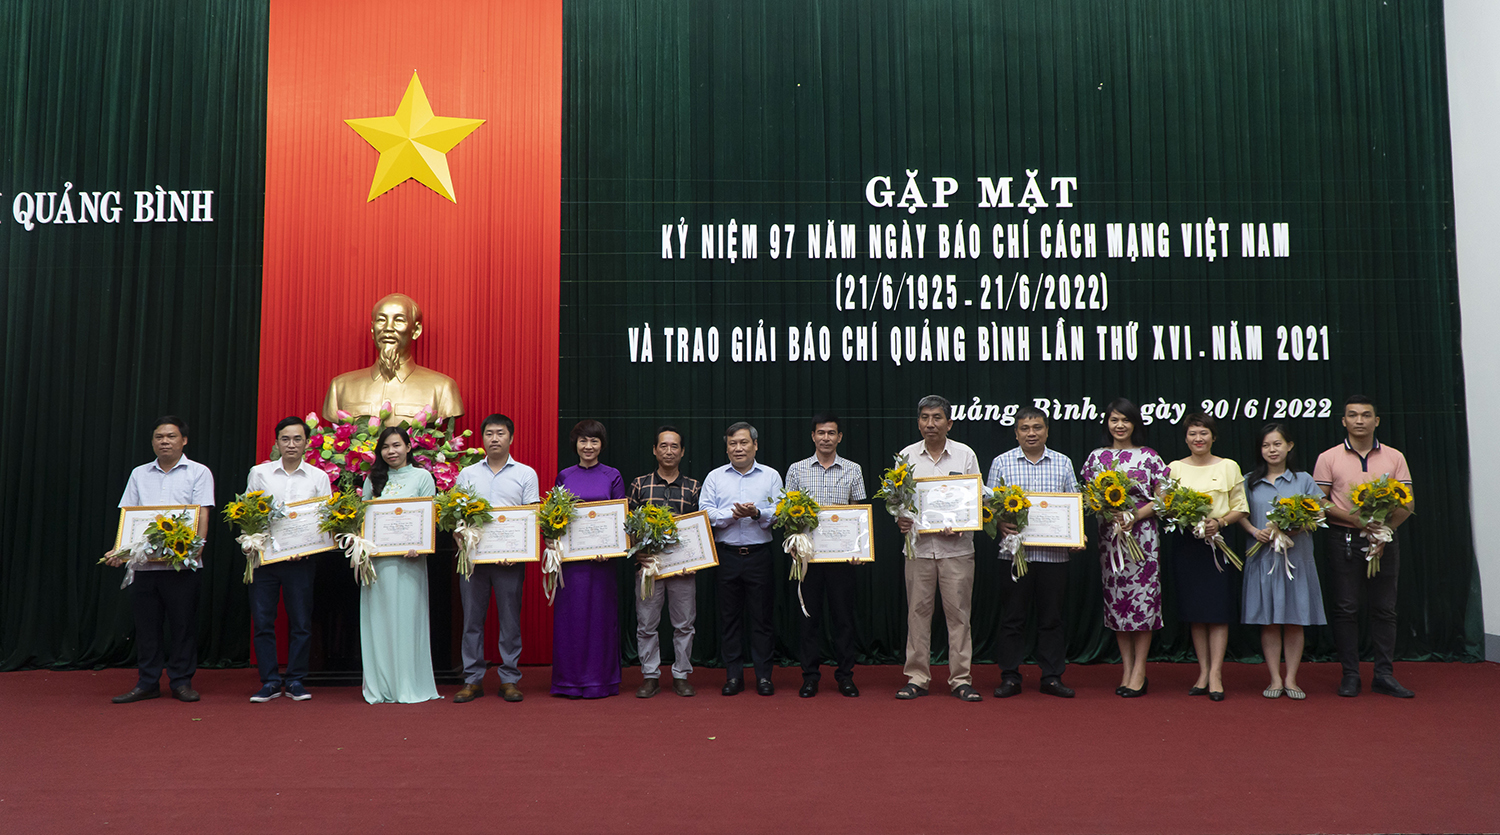 Kỷ niệm 97 năm Ngày Báo chí cách mạng Việt Nam và trao Giải Báo chí Quảng Bình lần thứ XVI